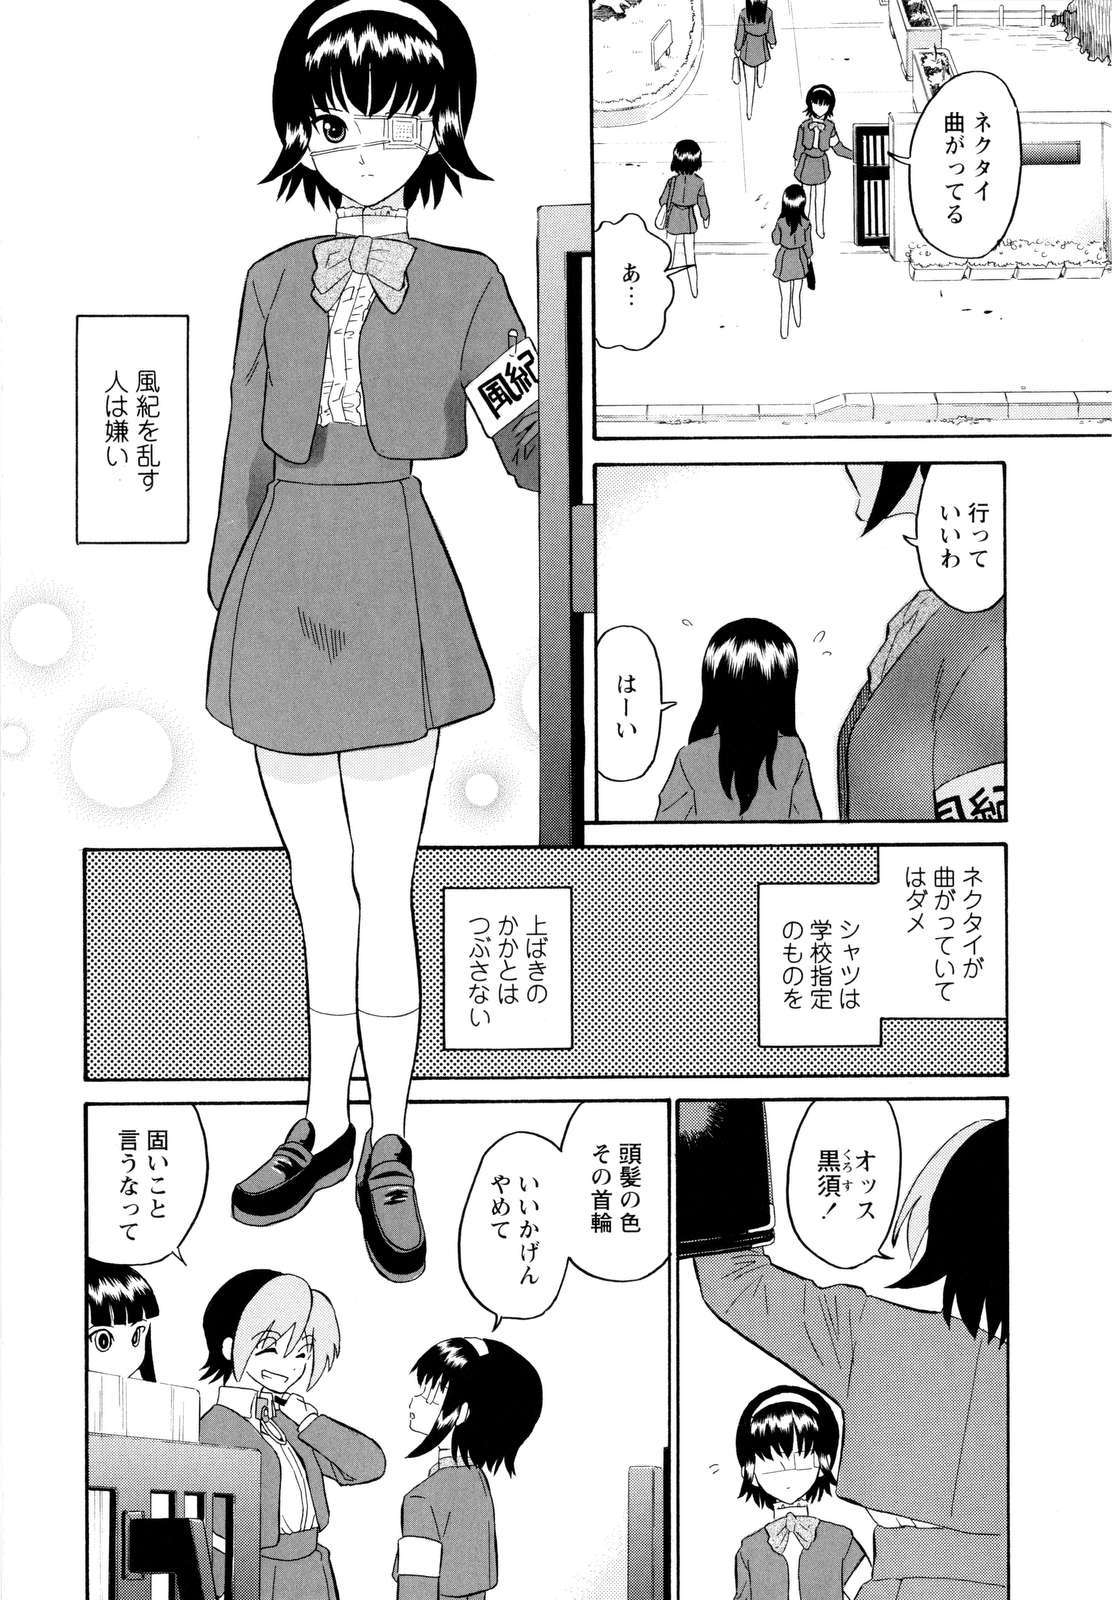 [Dozamura] Haruka 69 Vol.2 page 11 full